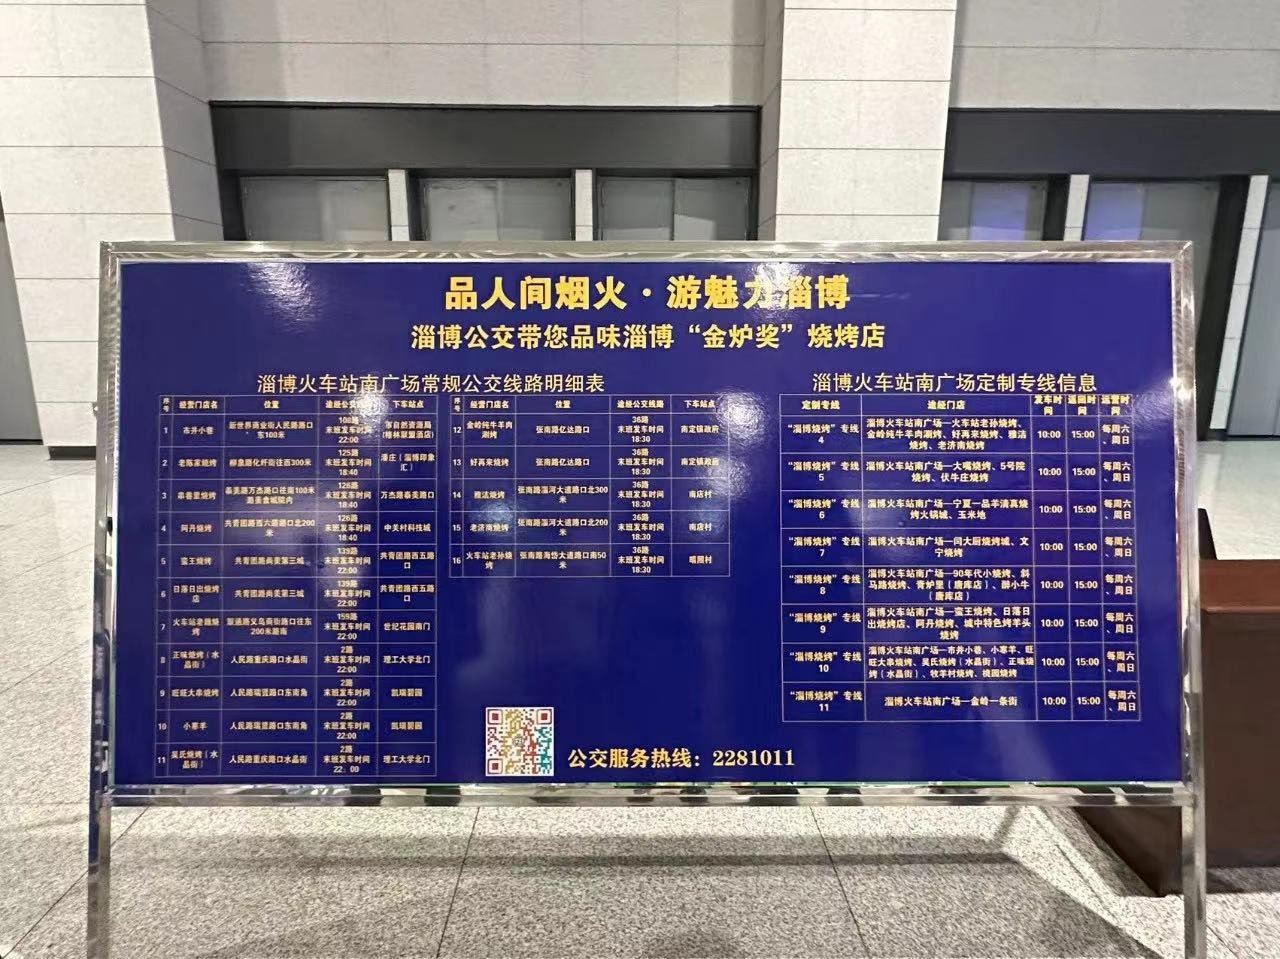 淄博火车站出站口的公交线路指示牌，清晰标明了各线路沿途知名烧烤店。（新华社记者 张超帆 摄）